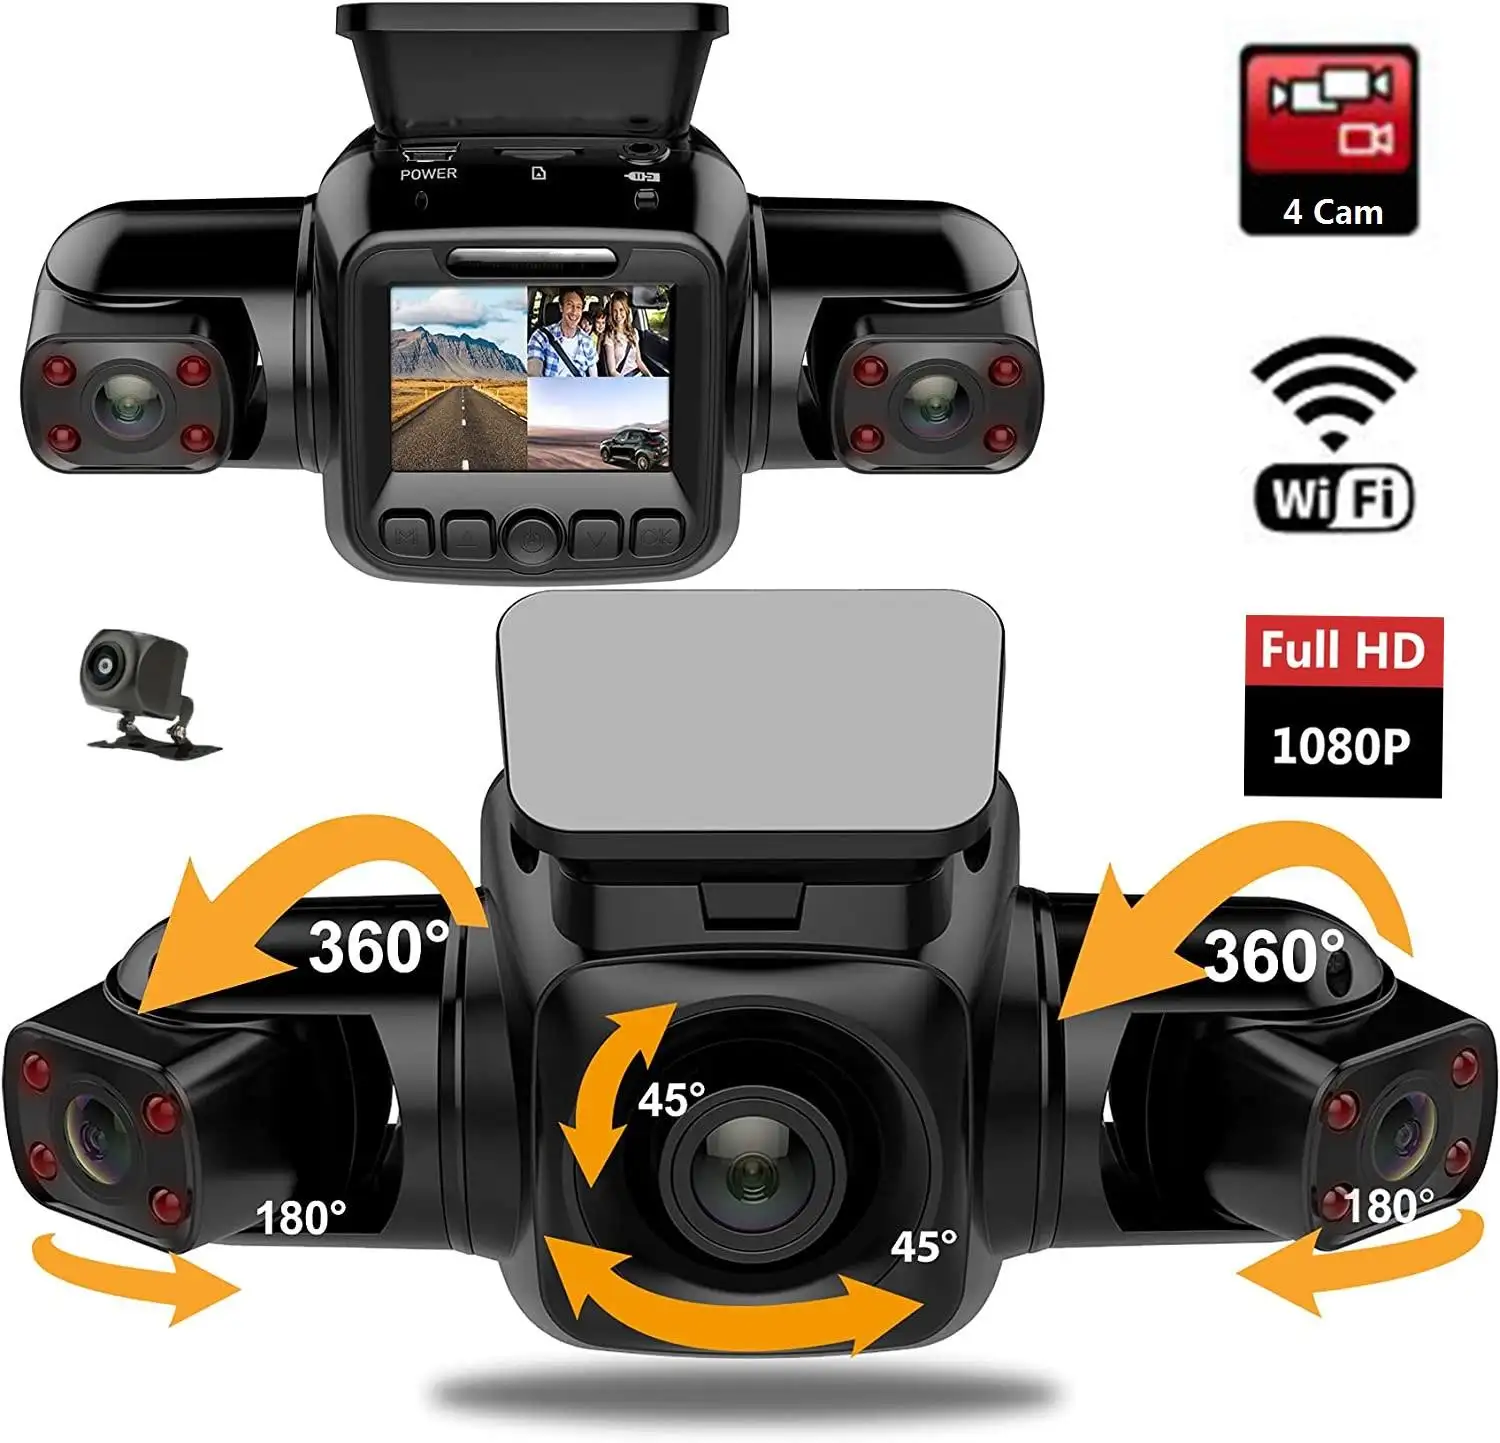 Kamera Dvr mobil 4 kamera 1080p + p + p, perekam Gps Wifi penglihatan malam lensa ganda dengan tampilan belakang 3 Saluran